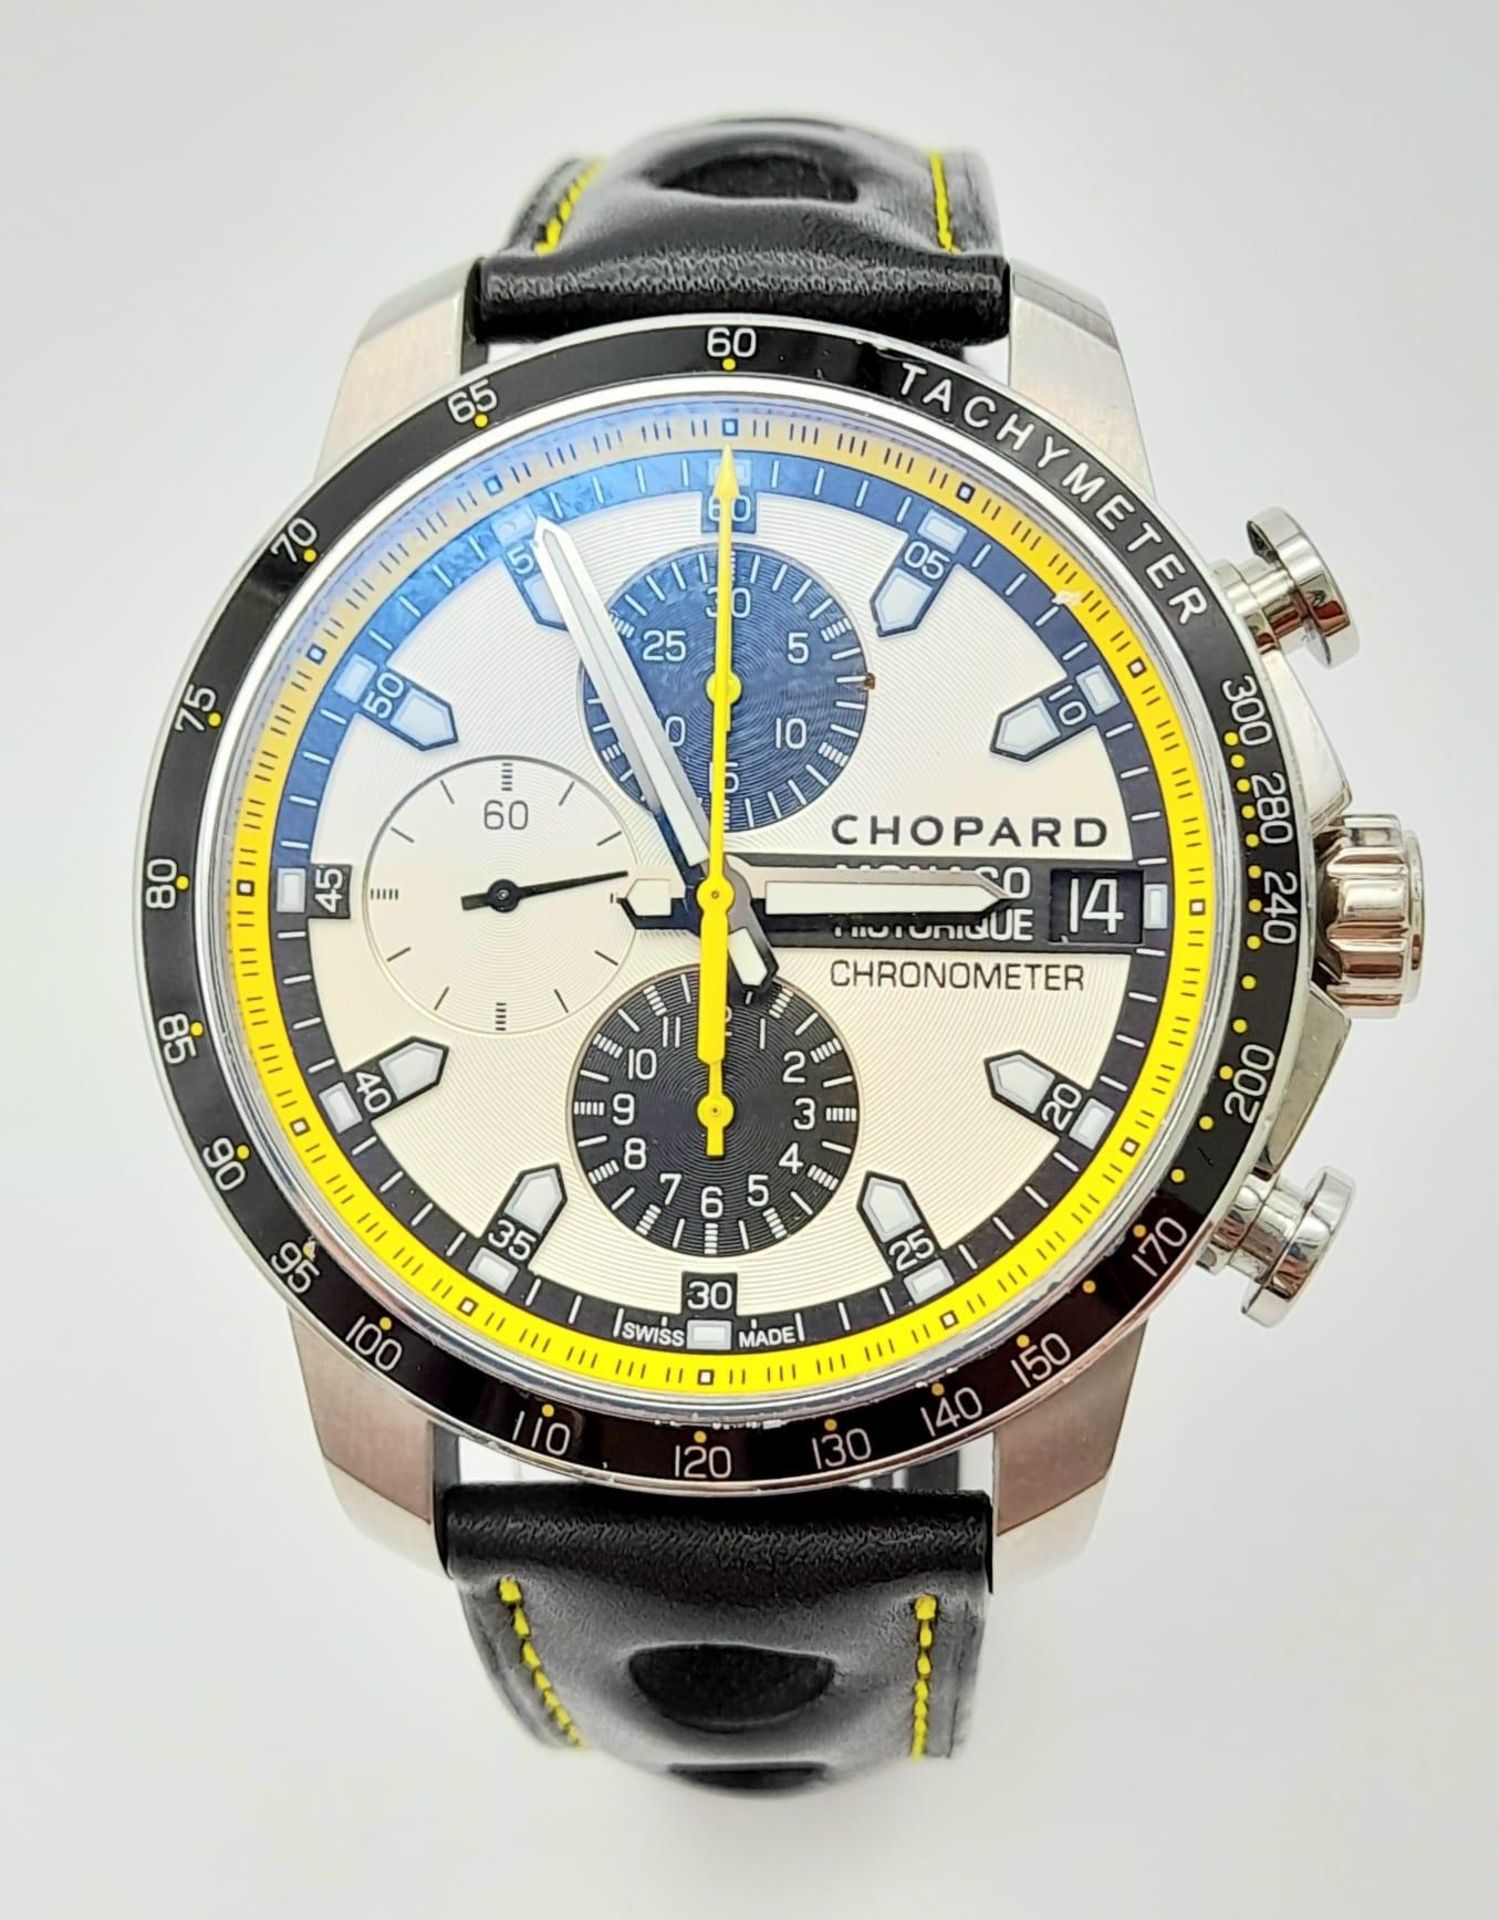 A Chopard Grand Prix de Monaco Historique Chronograph Gents Watch. Black leather strap. Titanium